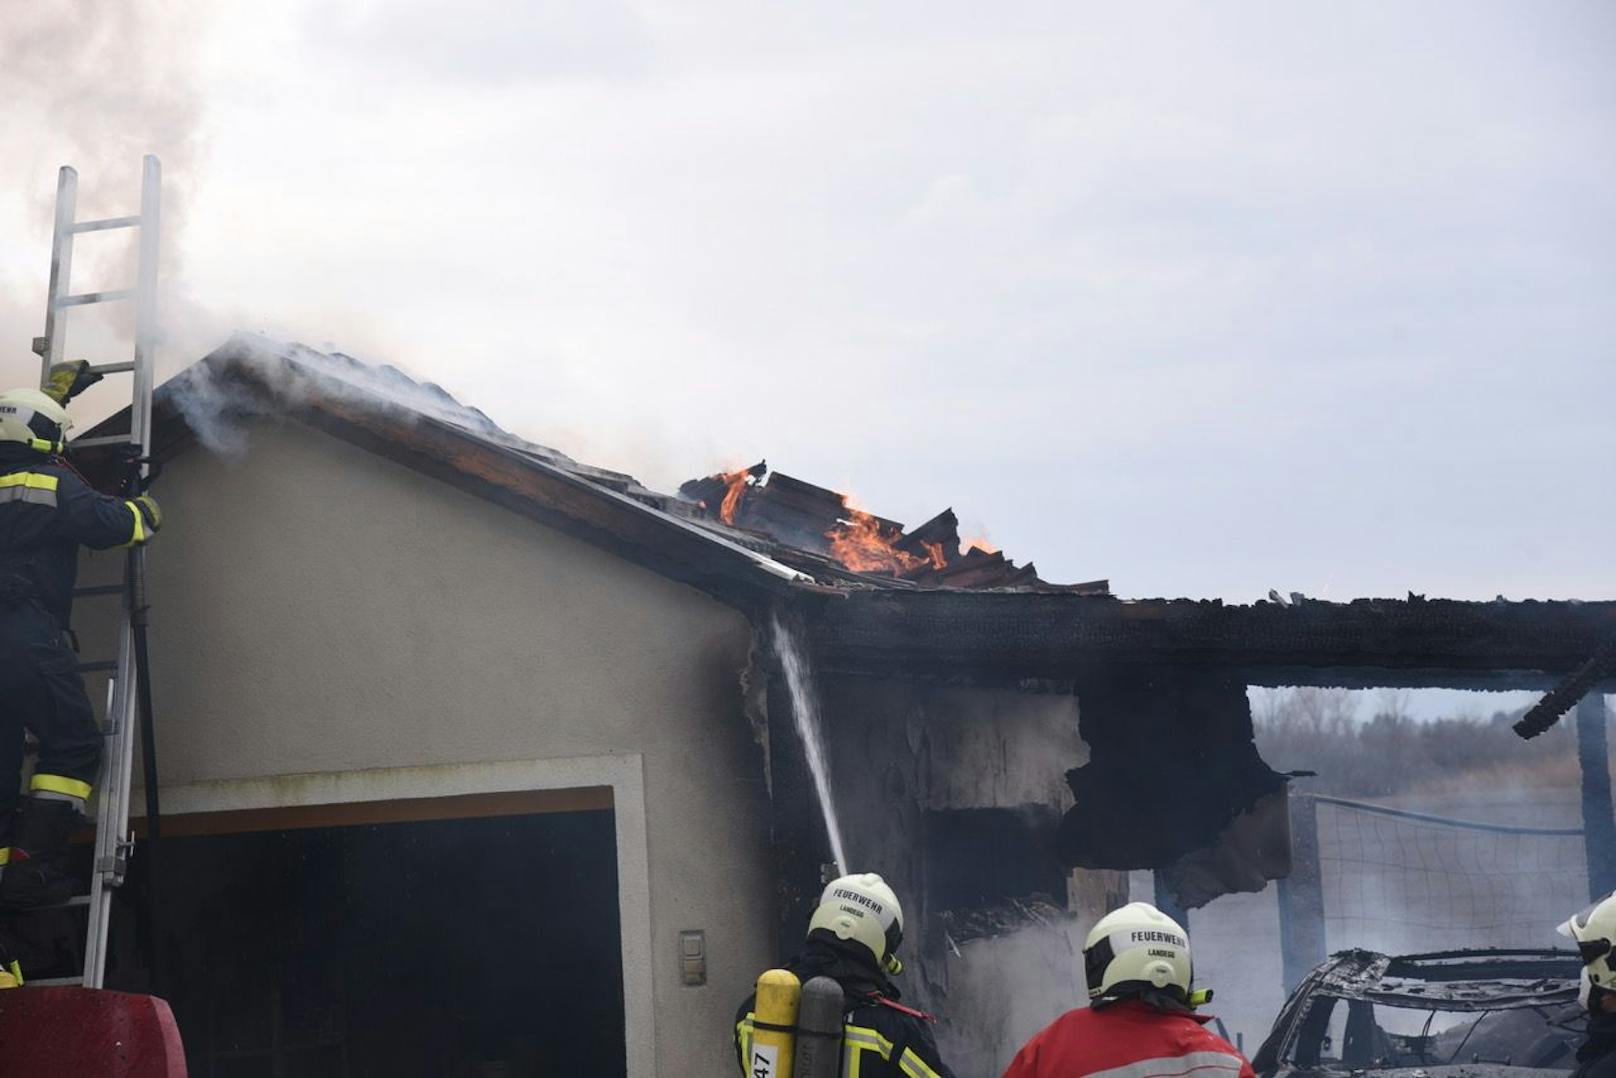 Carport und Garage standen in Flammen